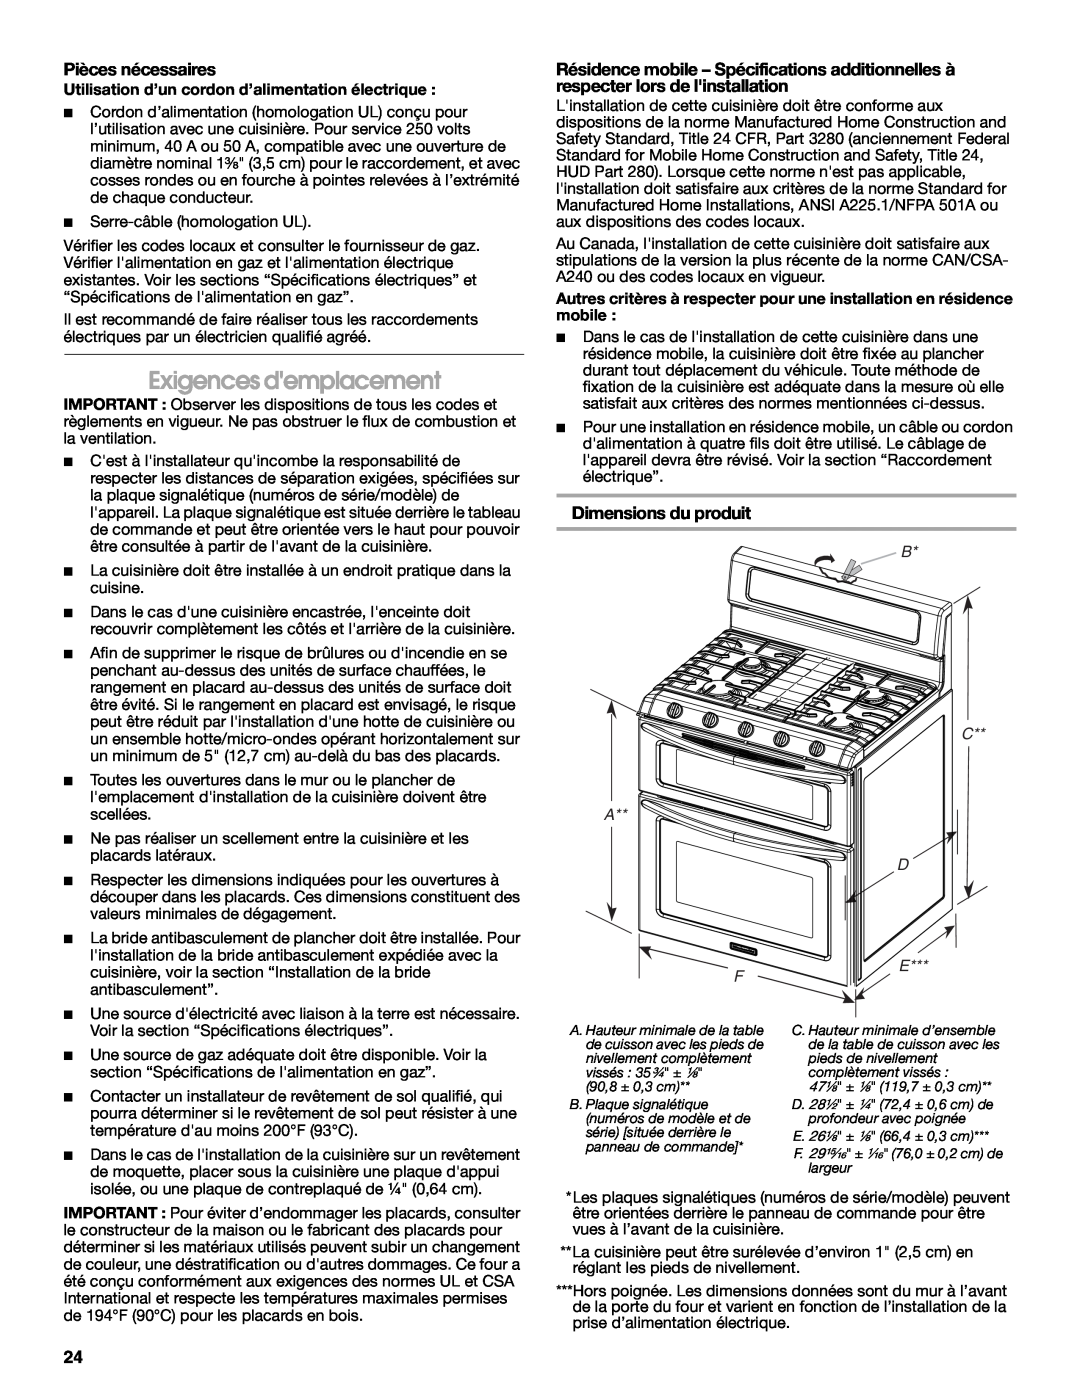 KitchenAid W10526086A installation instructions Exigences demplacement, Pièces nécessaires, Dimensions du produit, B D E 